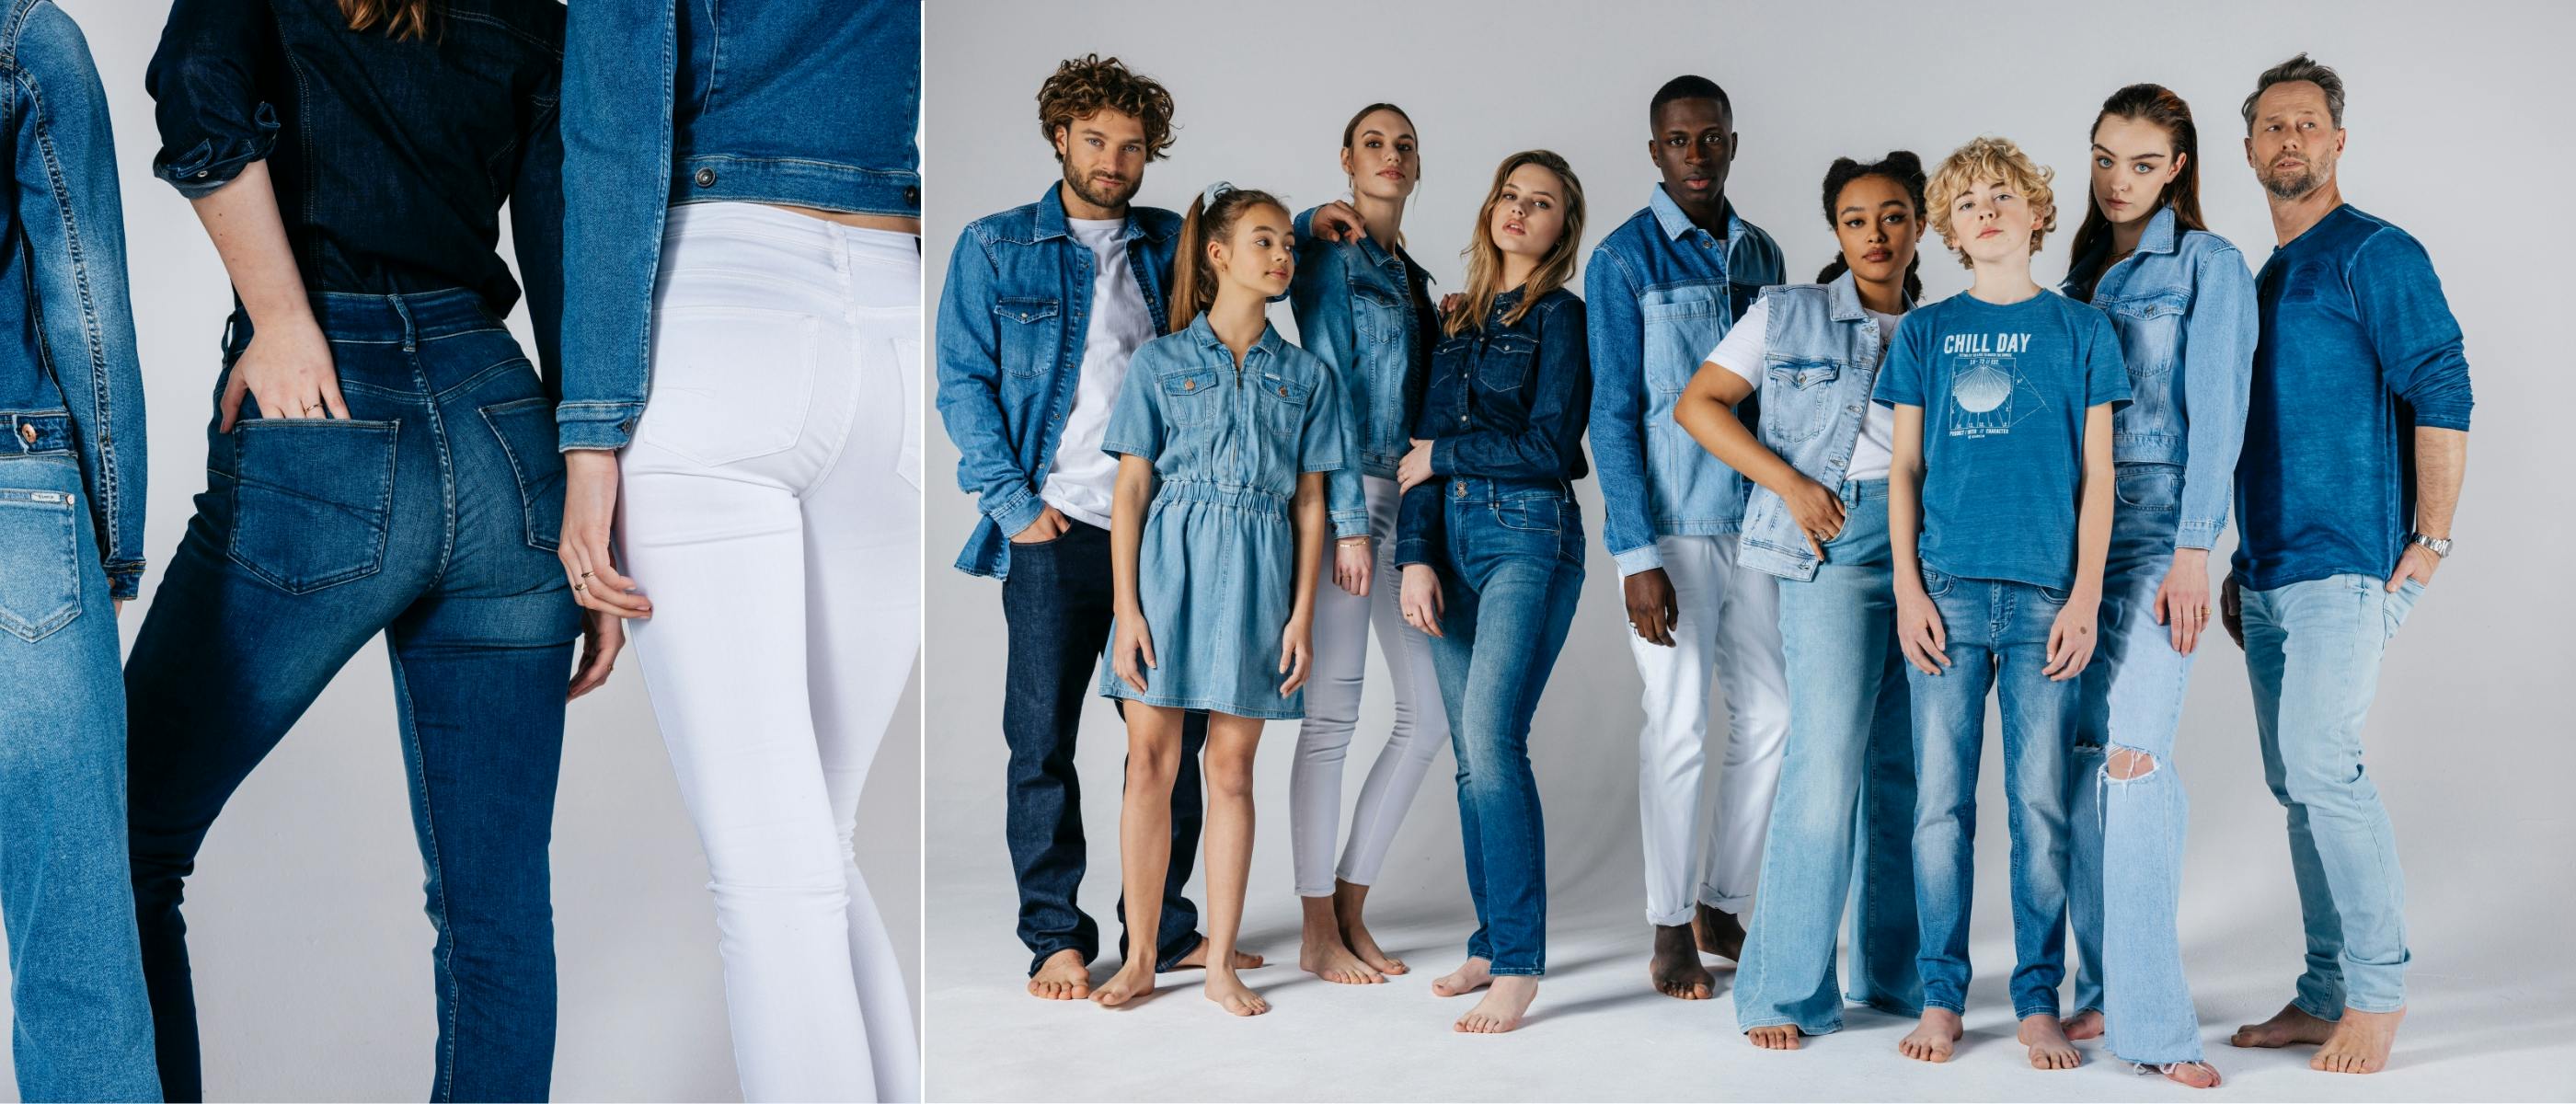 engel trog Bij zonsopgang De jeans trends van 2022 | Jeans Centre, De jeansspecialist.